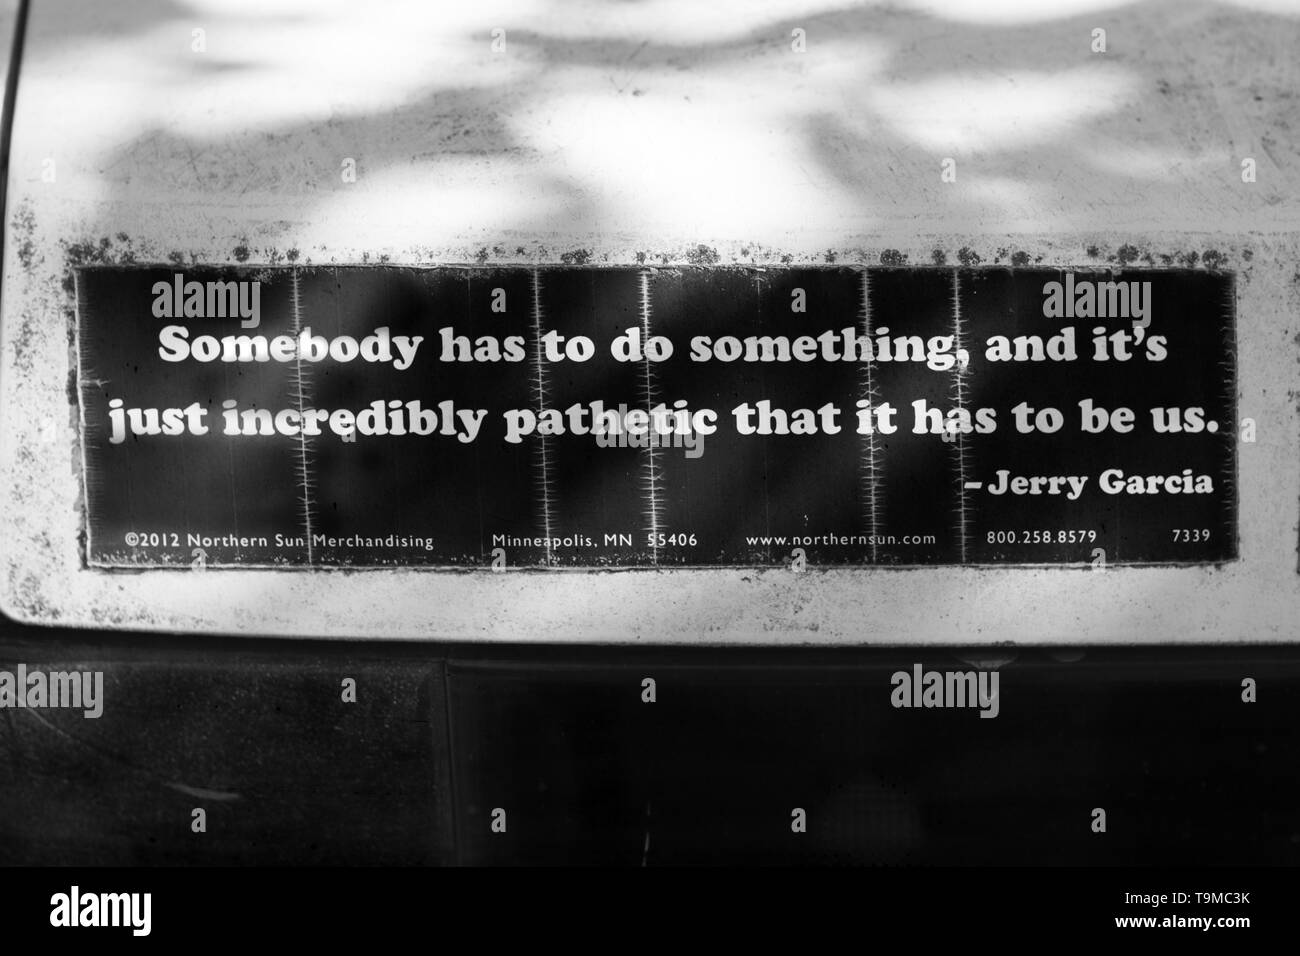 Un autocollant sur une voiture a une citation de Jerry Garcia : 'Somebody doit faire quelque chose, et c'est juste incroyablement pathétique qu'il a pour nous." Banque D'Images